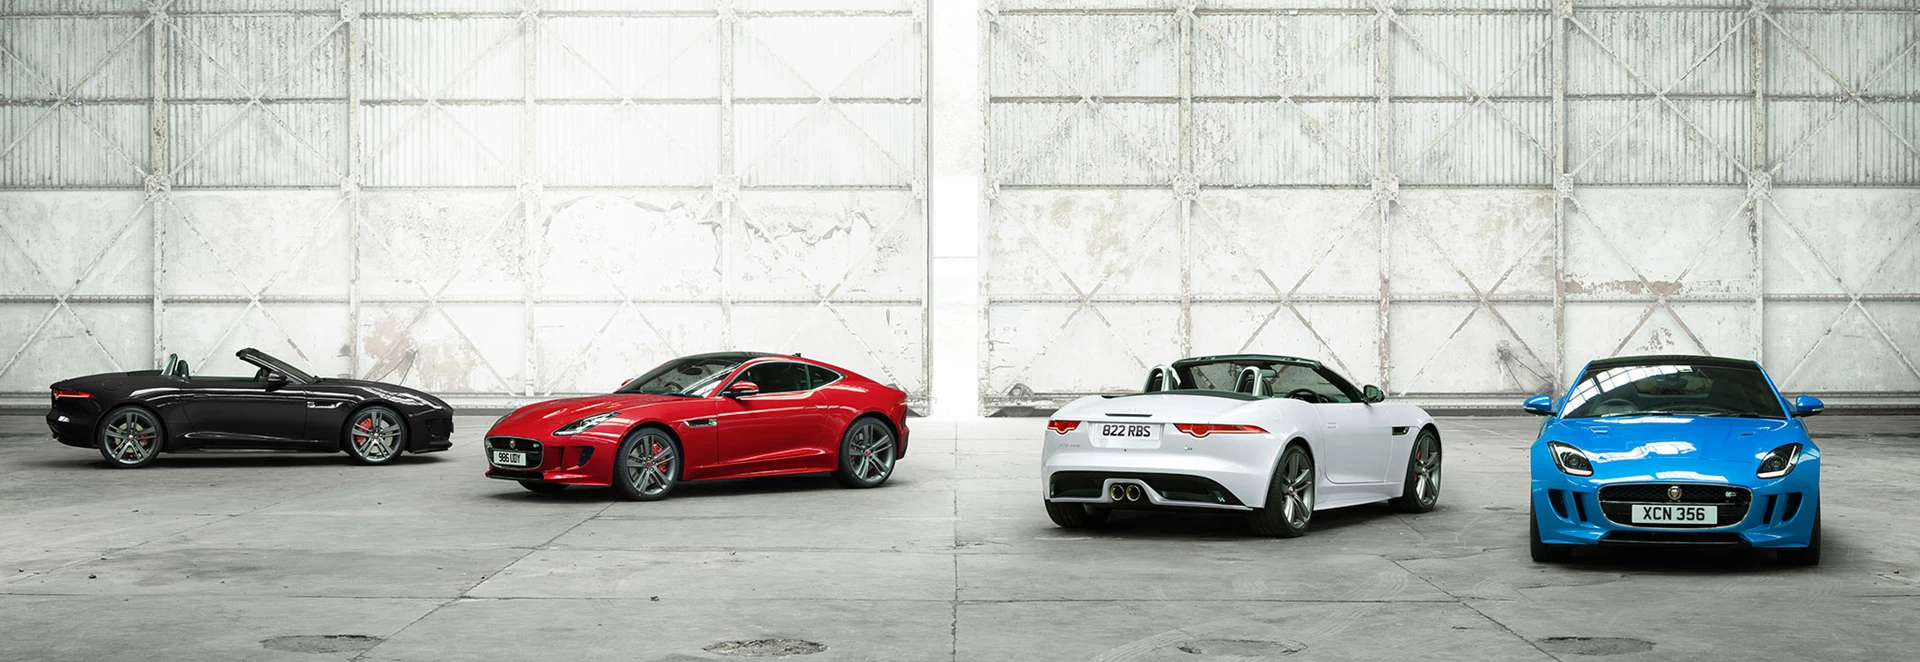 Jaguar unveils exclusive British Design Edition F-TYPE